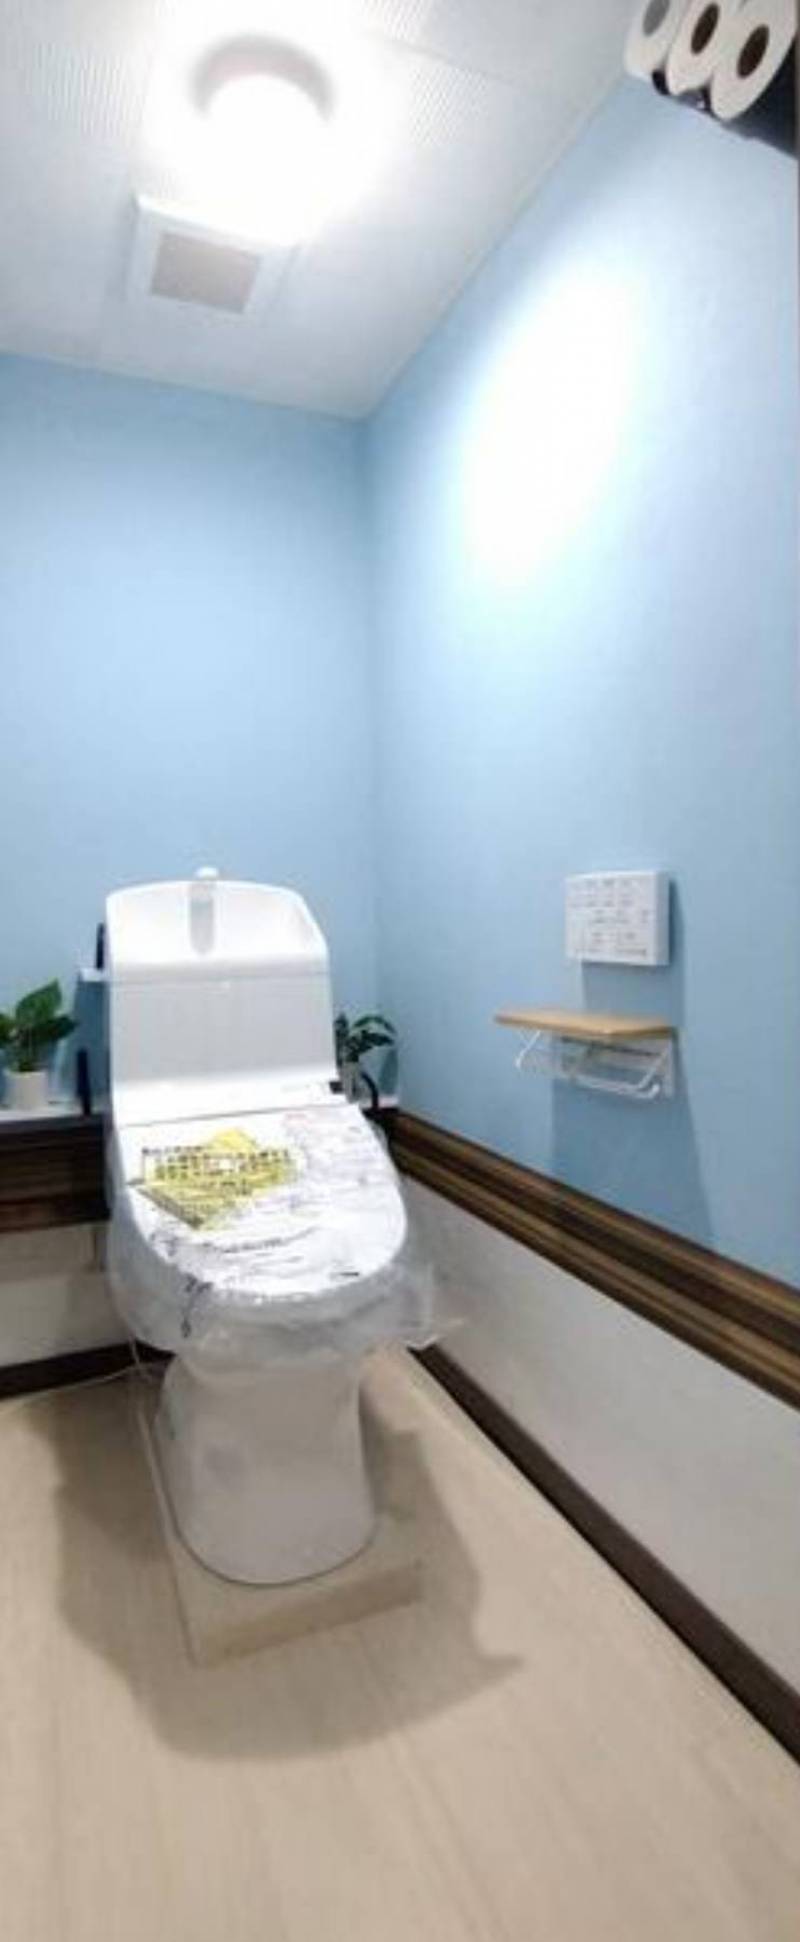 トイレも誰も使ってません！新品の全自動温水洗浄便座です